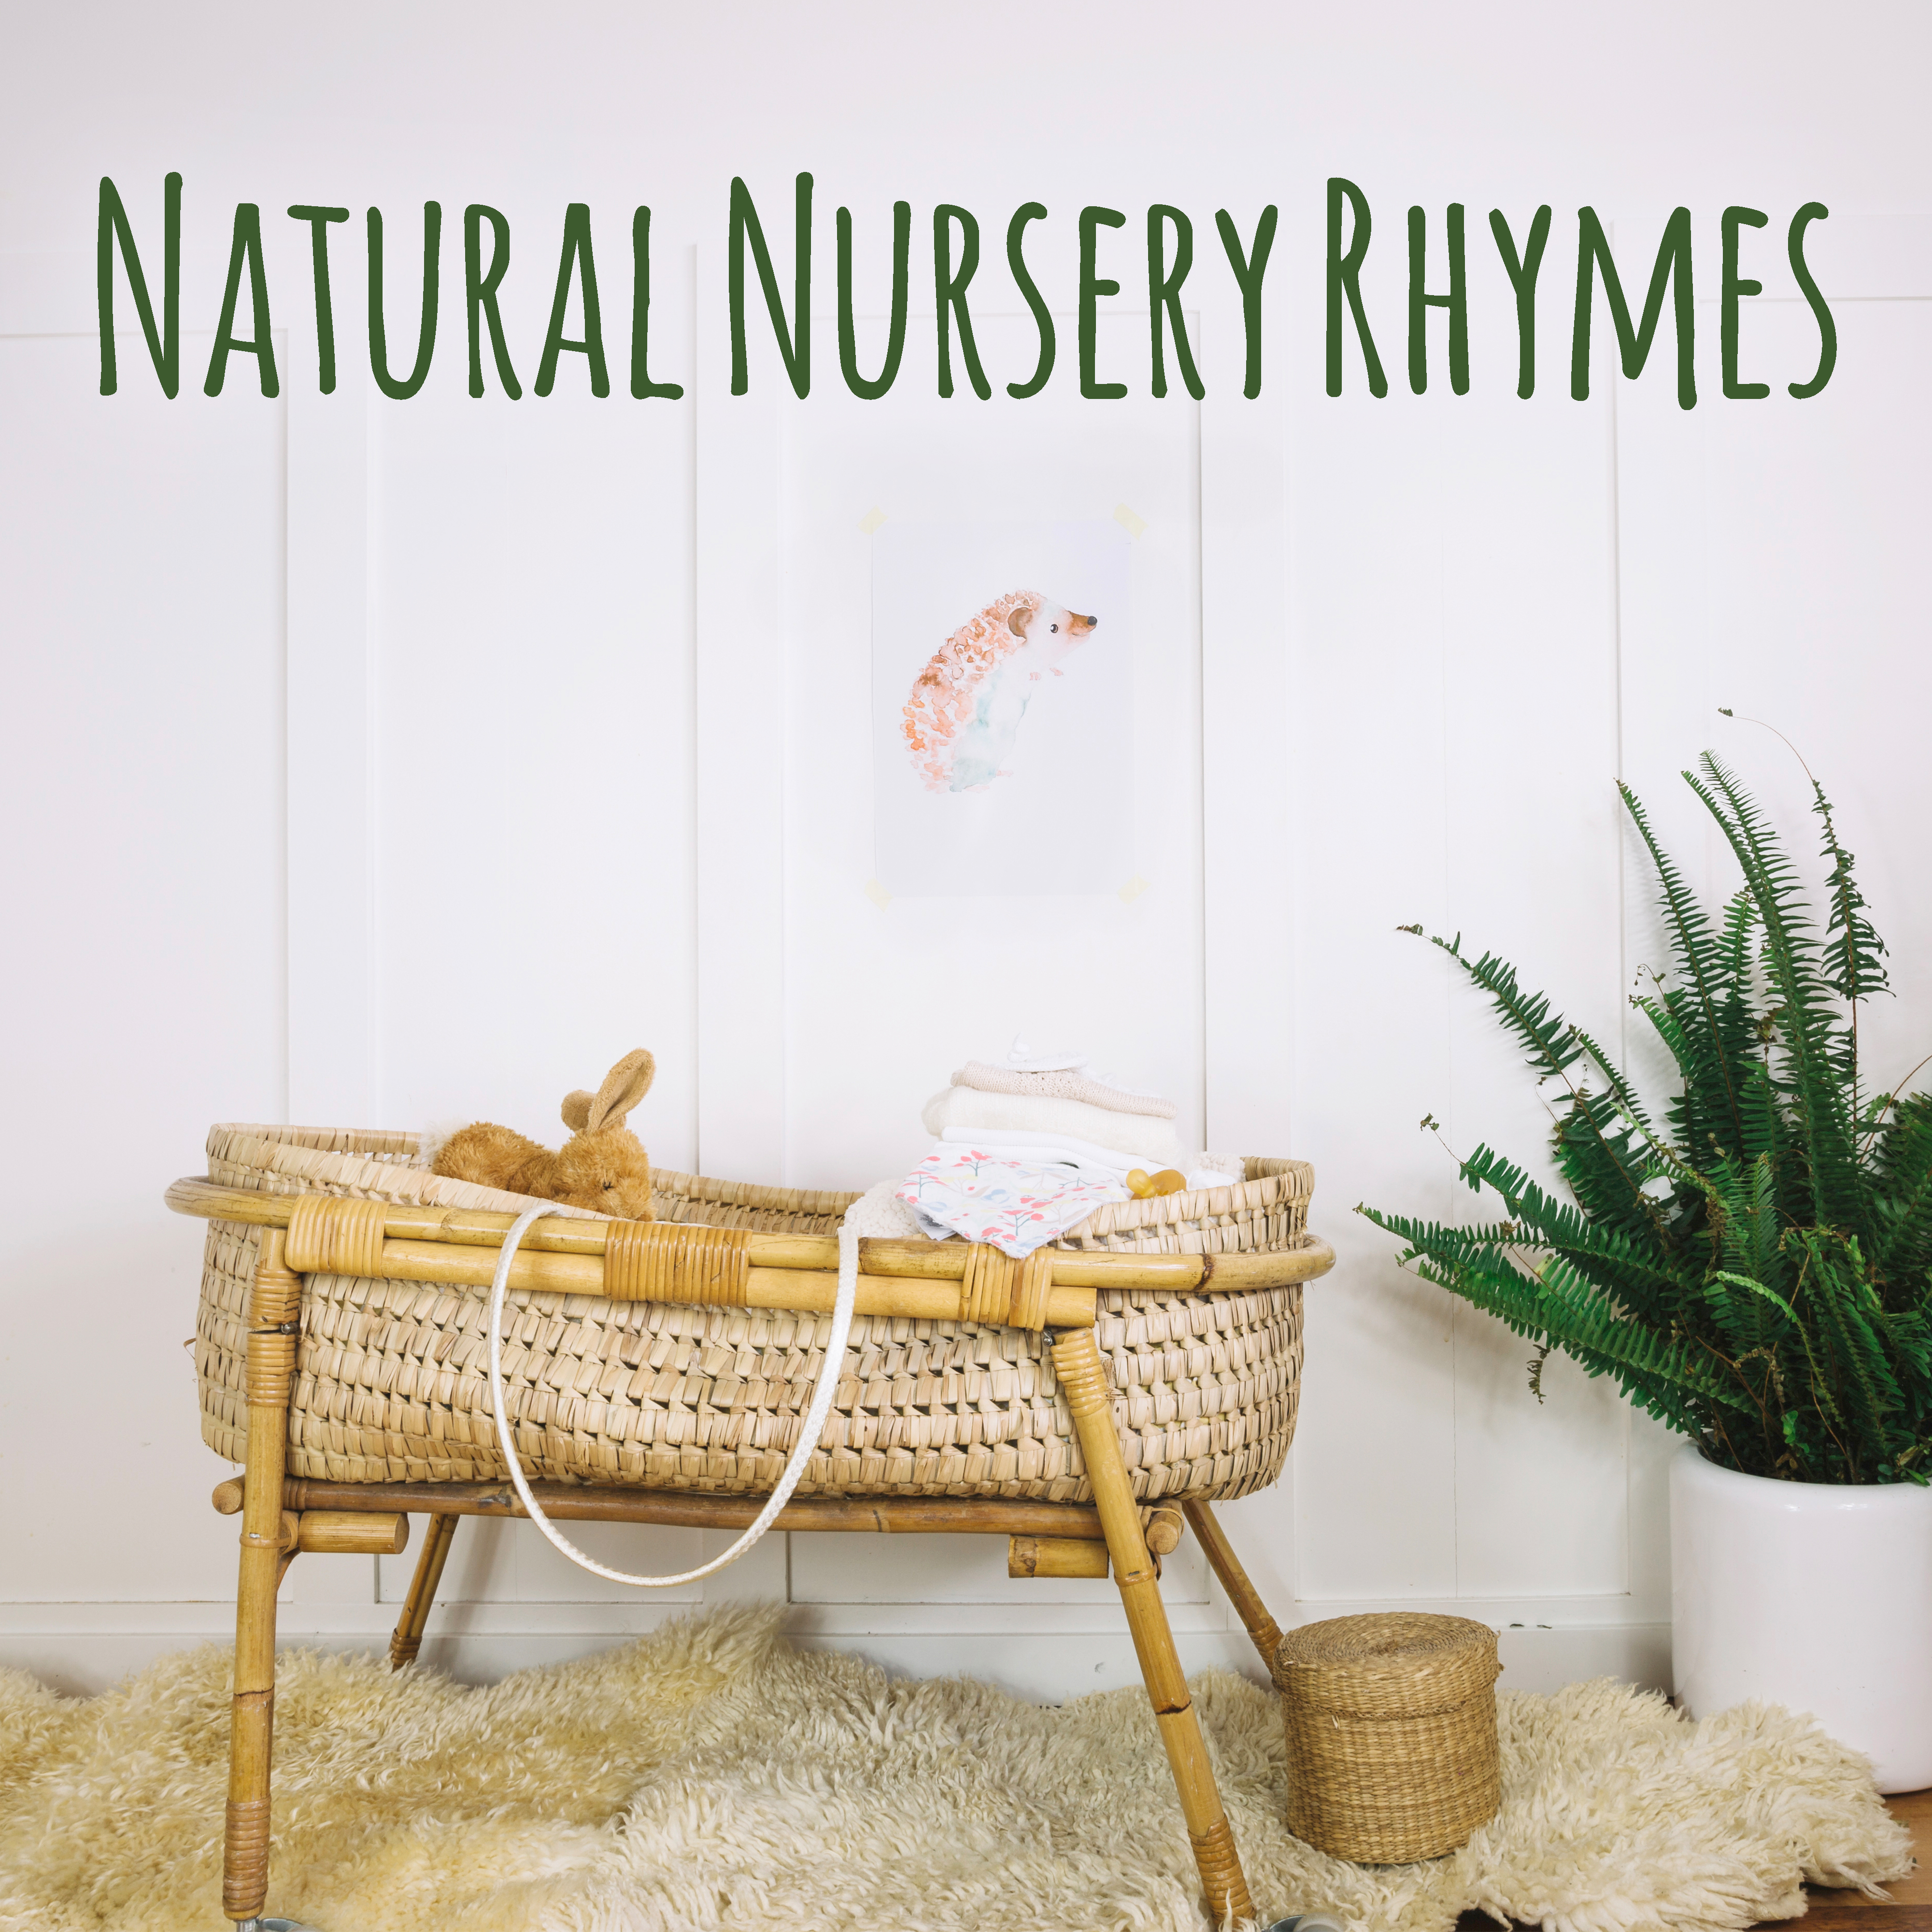 Natural Nursery Rhymes